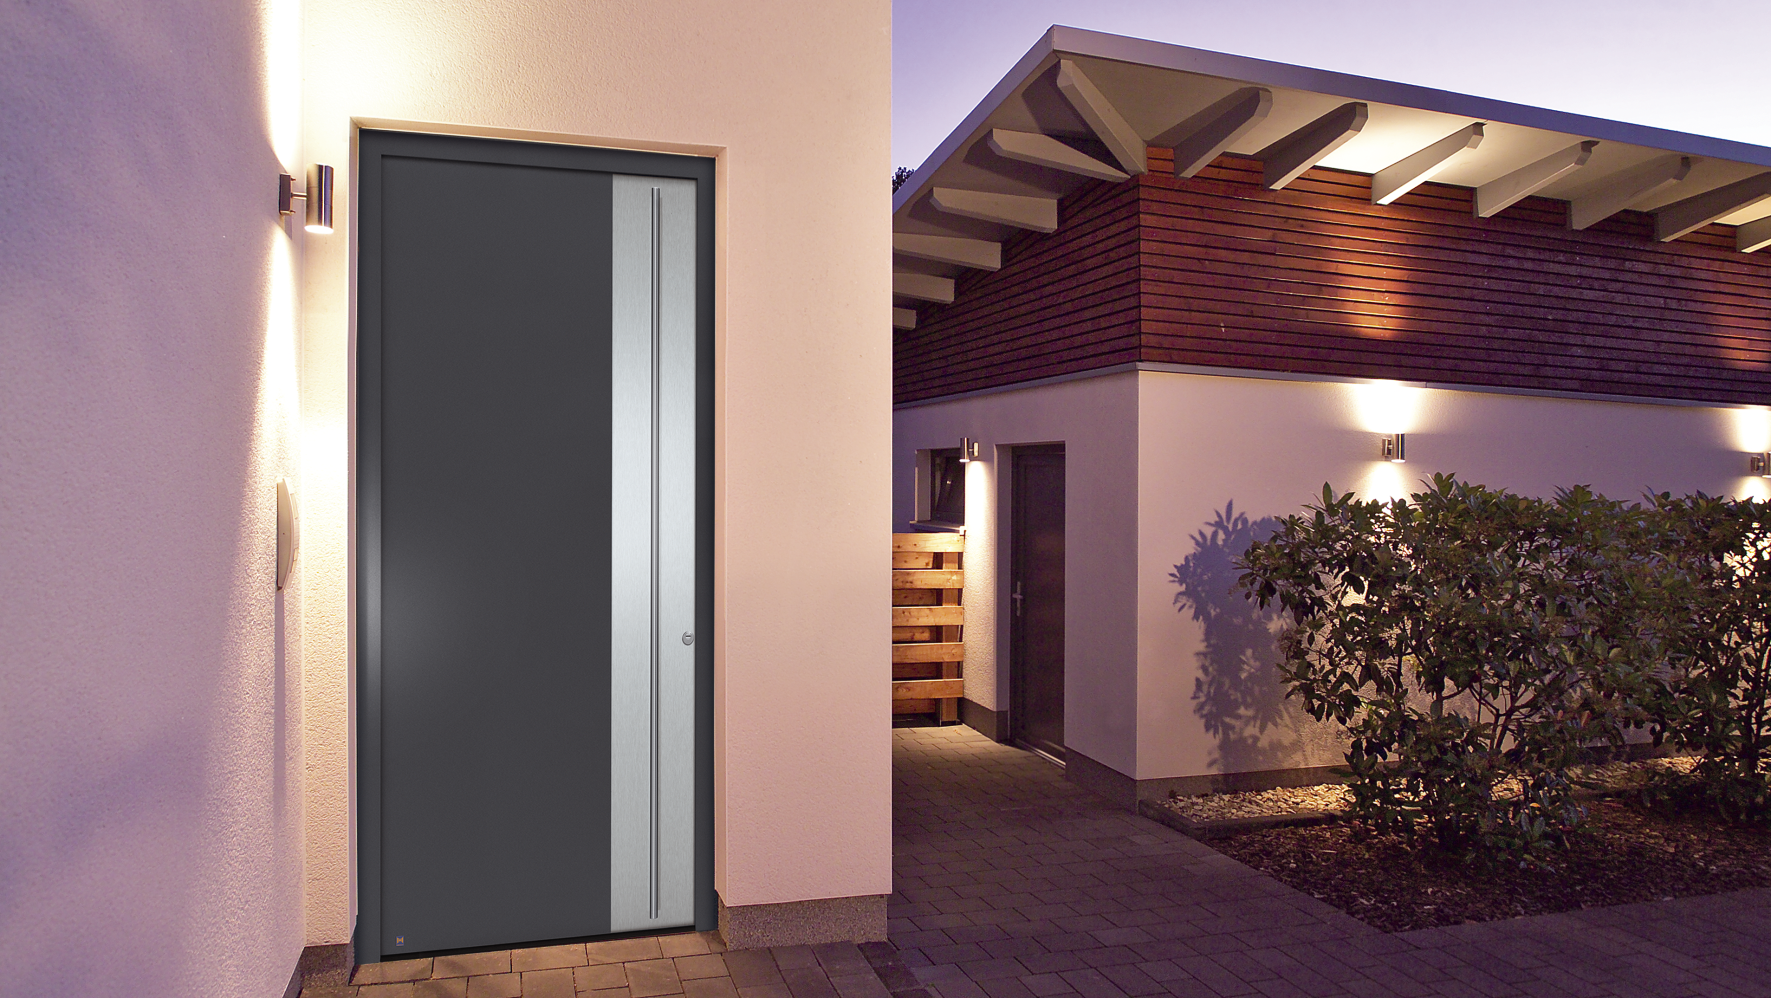 Hliníkové domové dvere Hörmann ThermoSafe dosahujú hodnotu UD do 0,8 W/(m2∙K) a vybavenie RC 3. Najnovšie je model možné zakúpiť aj vo výške do 2,5 metra